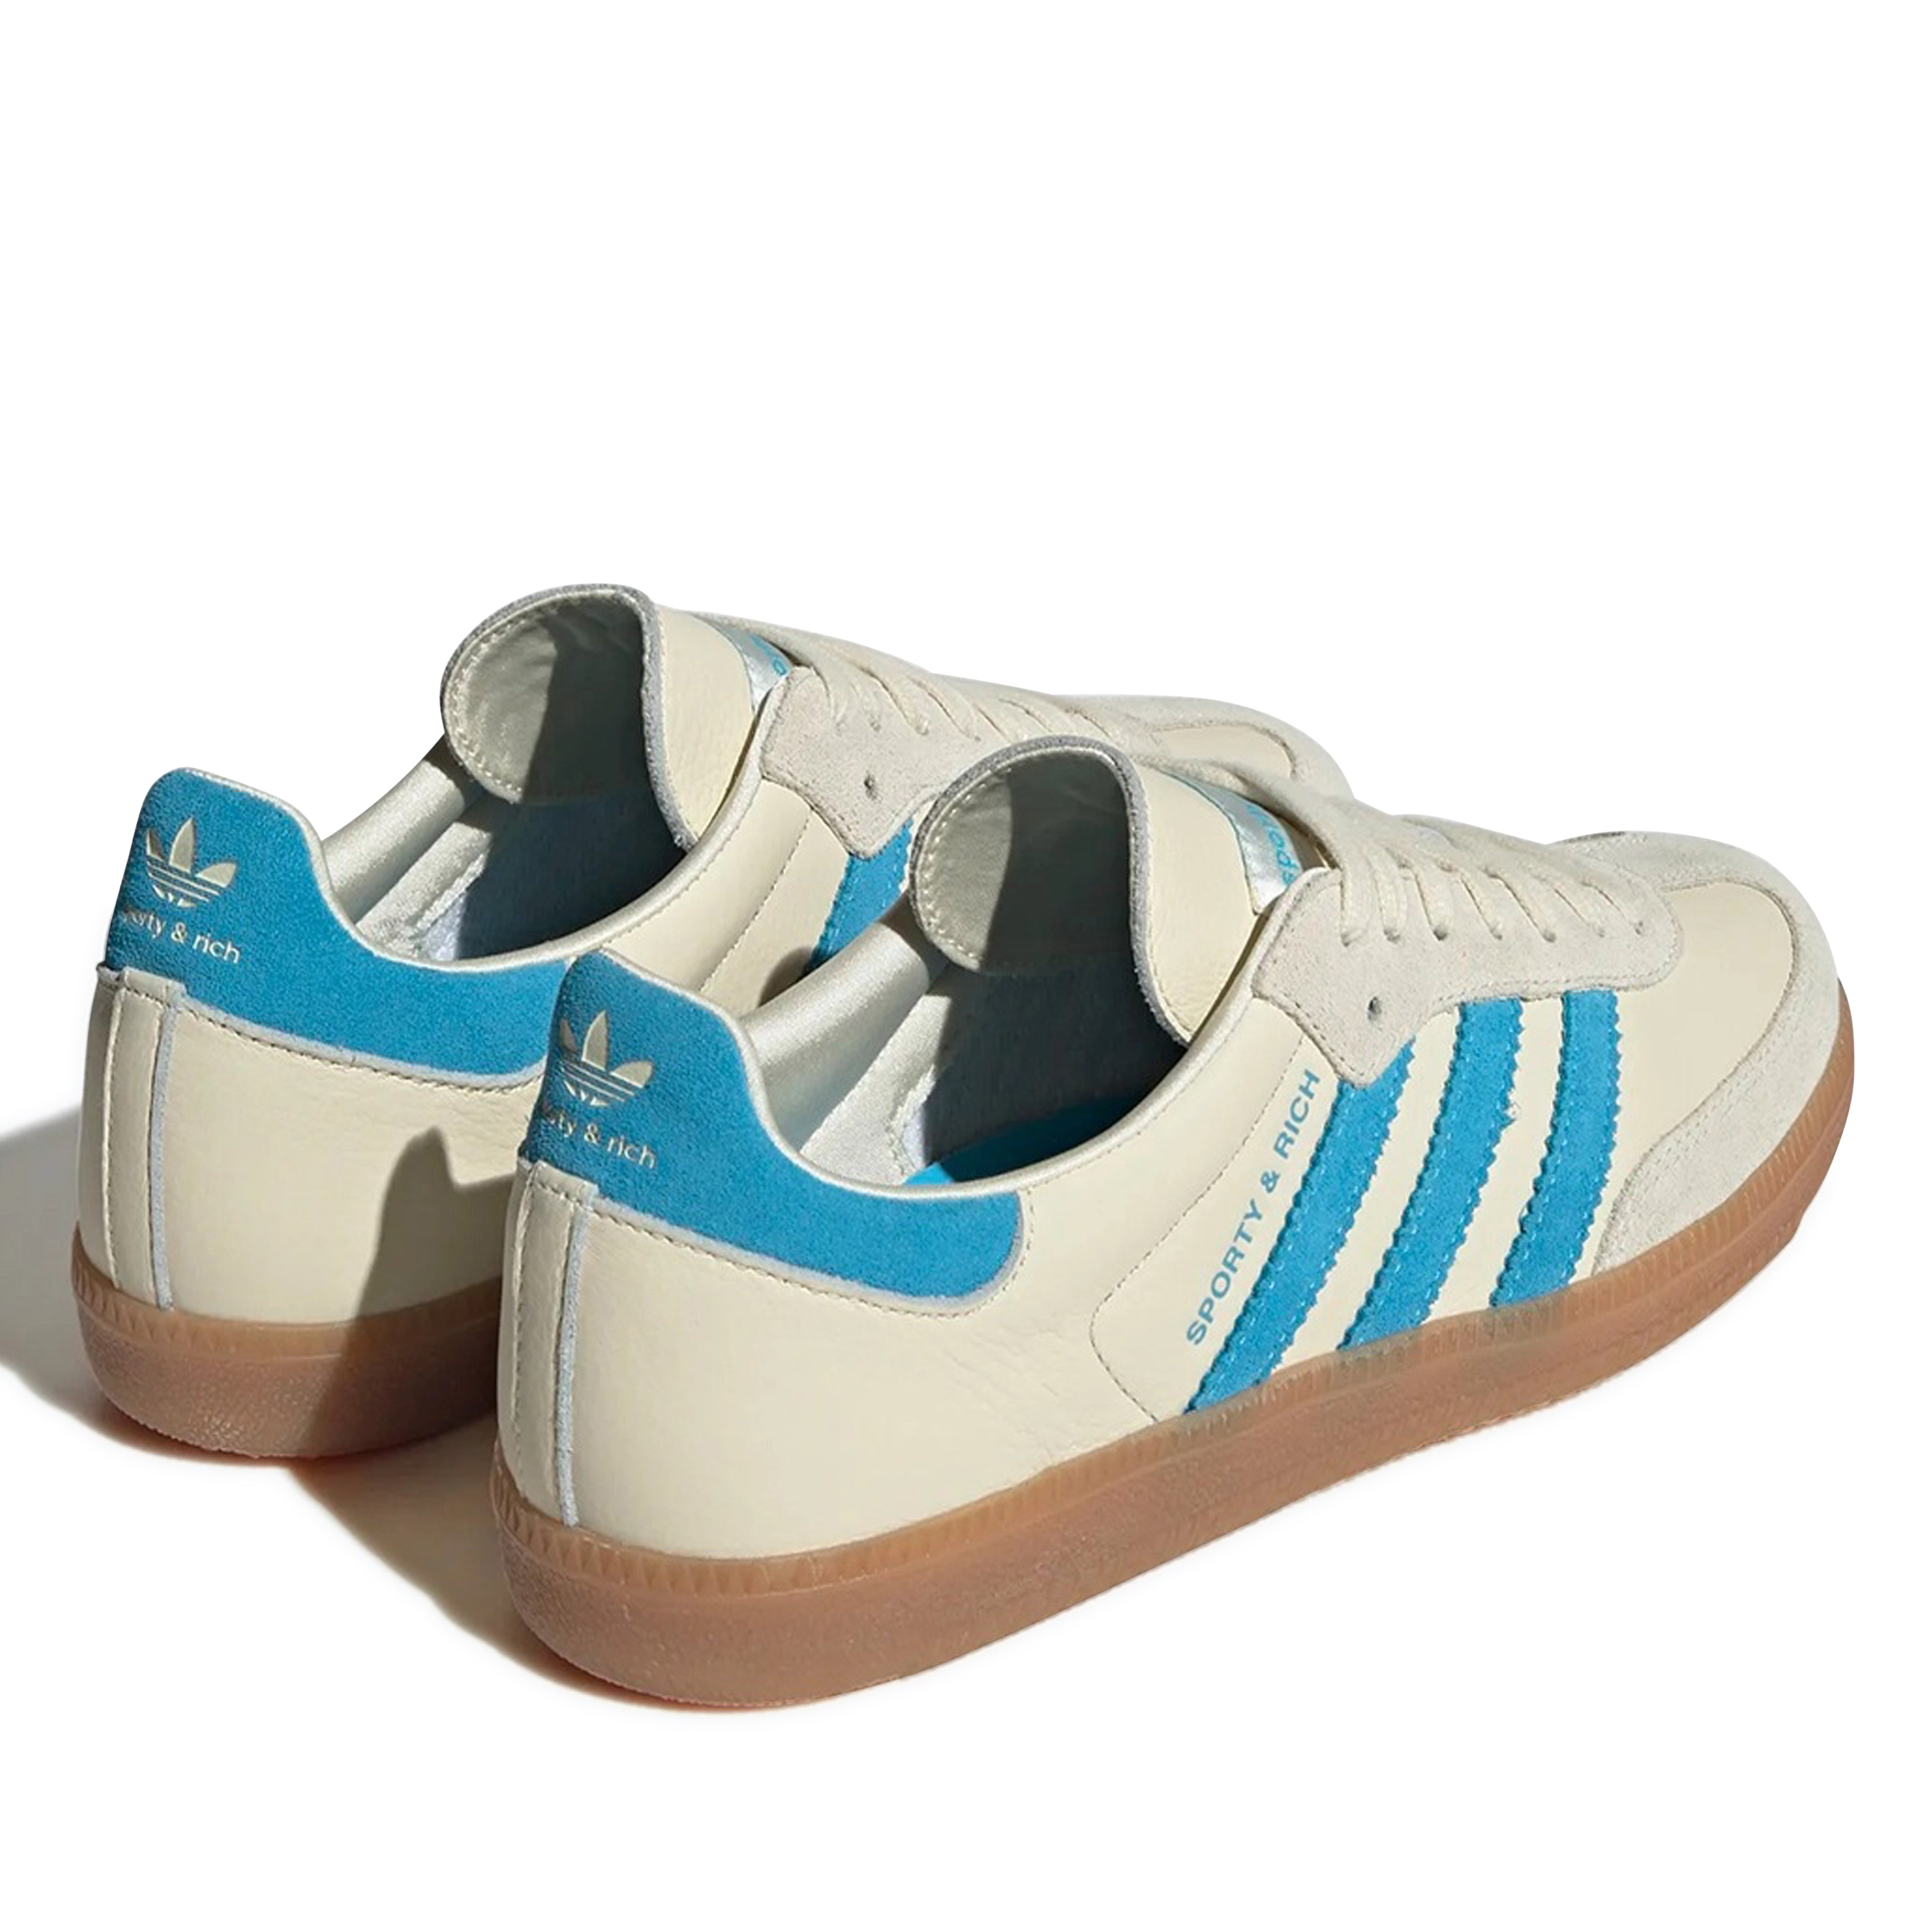 Adidas - Samba OG Sporty & Rich - (Cream White)